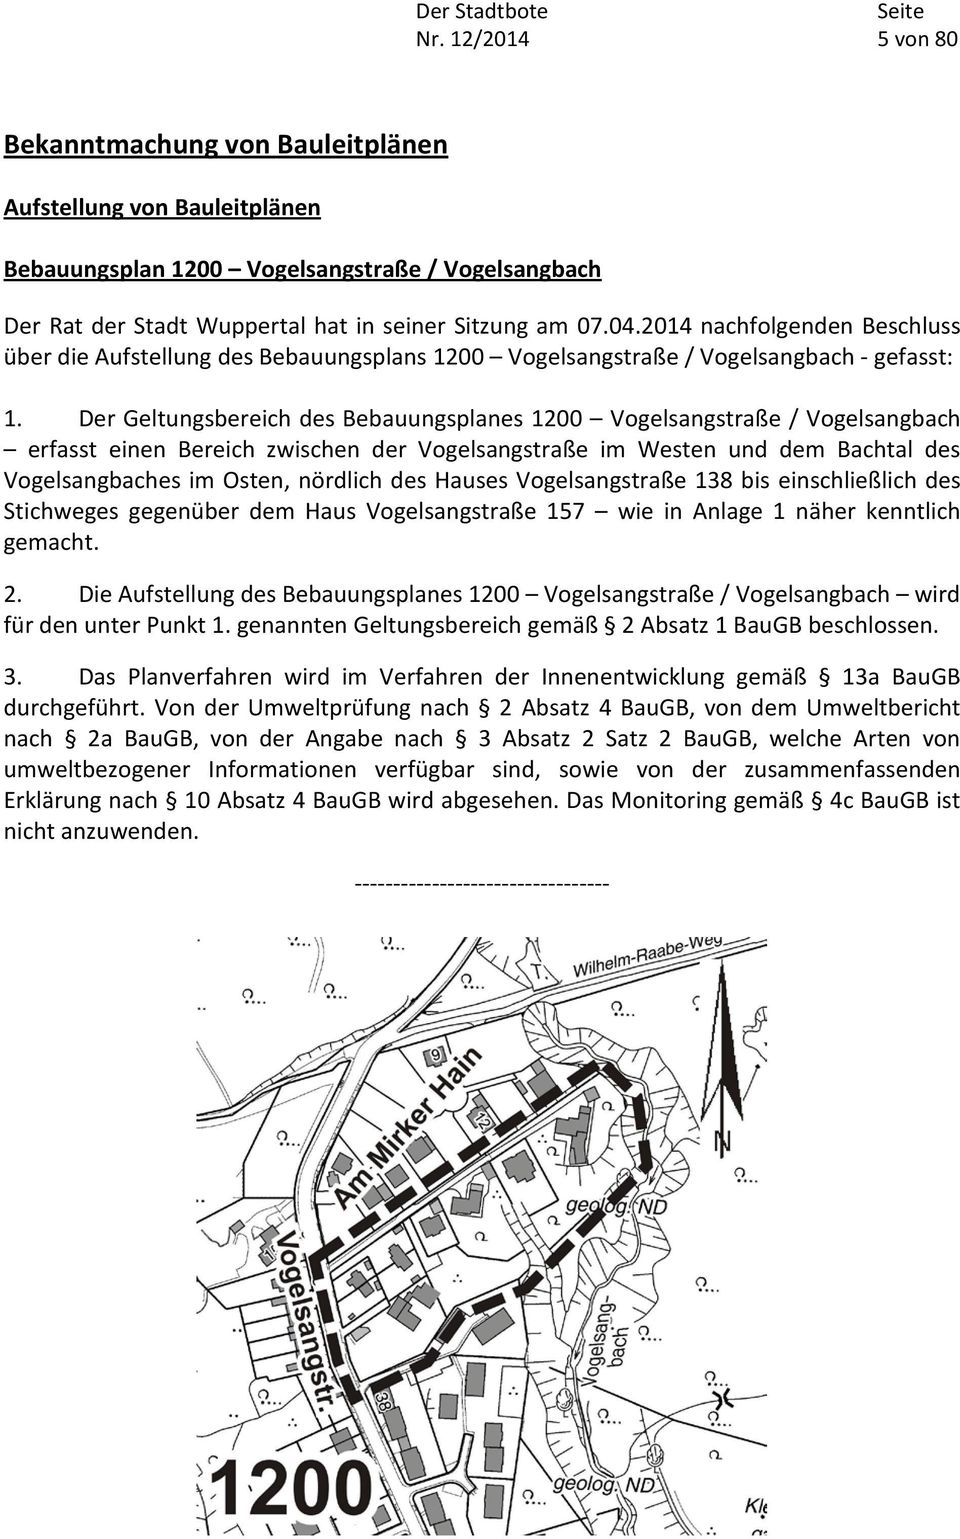 Der Geltungsbereich des Bebauungsplanes 1200 Vogelsangstraße / Vogelsangbach erfasst einen Bereich zwischen der Vogelsangstraße im Westen und dem Bachtal des Vogelsangbaches im Osten, nördlich des